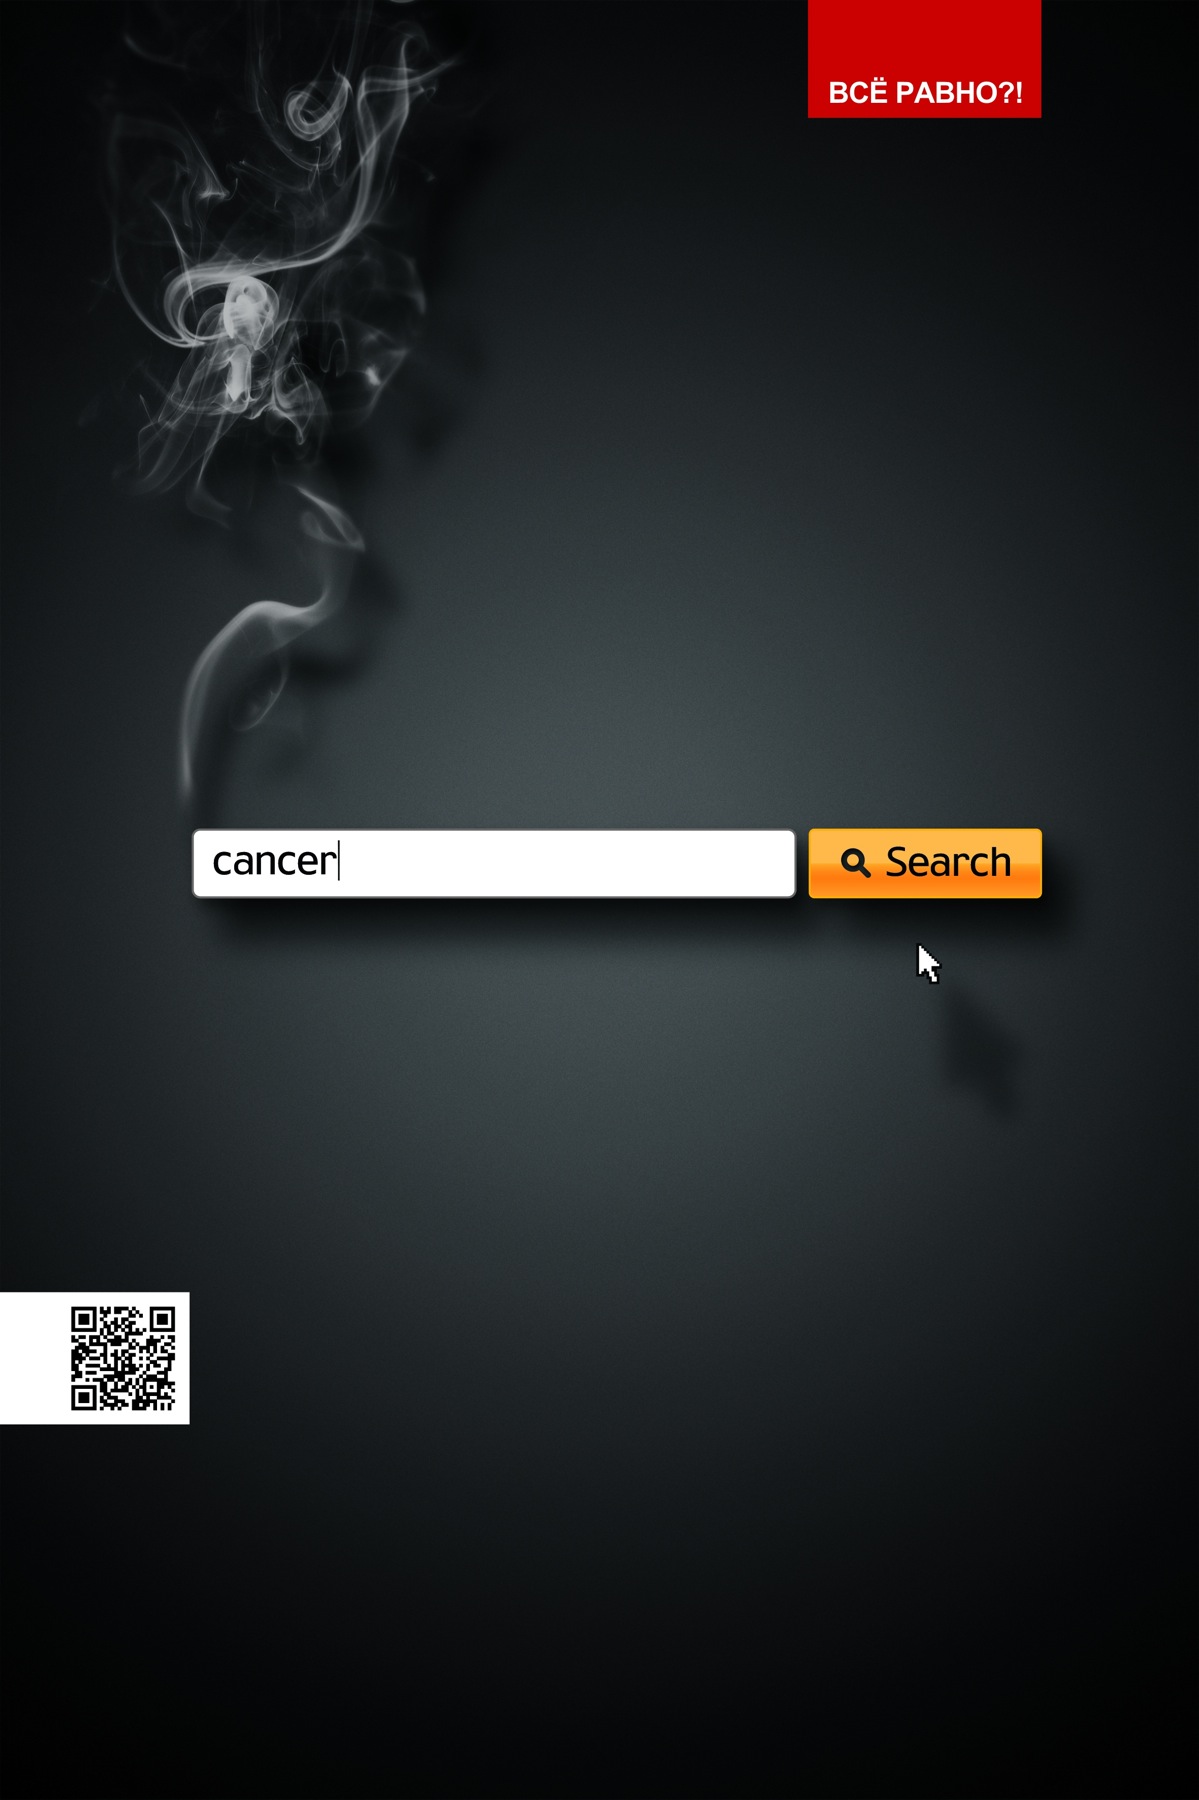 俄罗斯吸烟危害活动平面广告设计